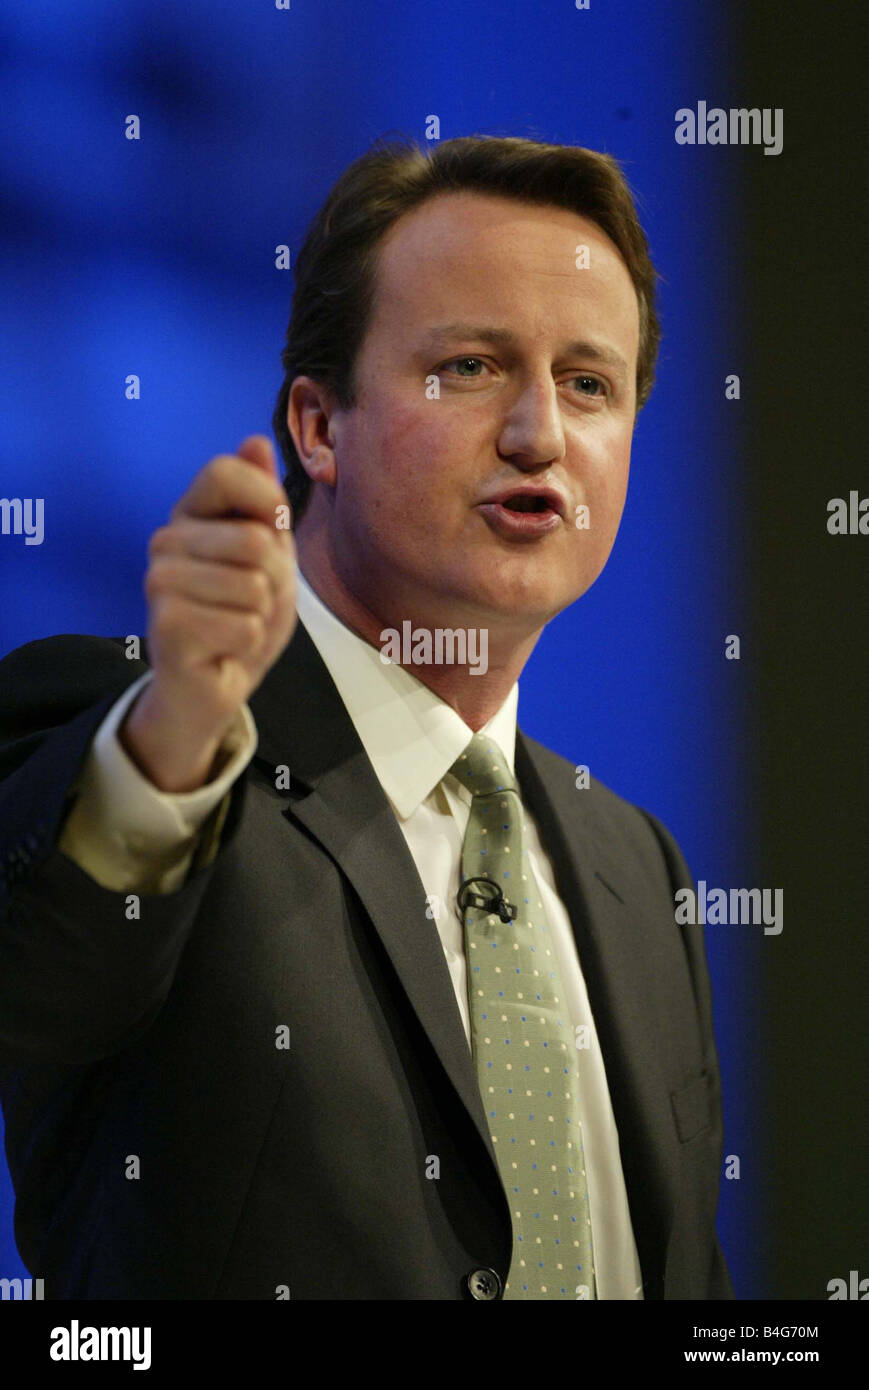 2005 aspirante a dirigente del partido Conservador, David Cameron, visto aquí pronunciara su discurso en la conferencia del partido, celebrada este año en Blackpool Cameron el más joven de los candidatos pasó a ganar los siguientes dos rondas de la competición para convertirse en líder del partido de octubre de 2005. Foto de stock